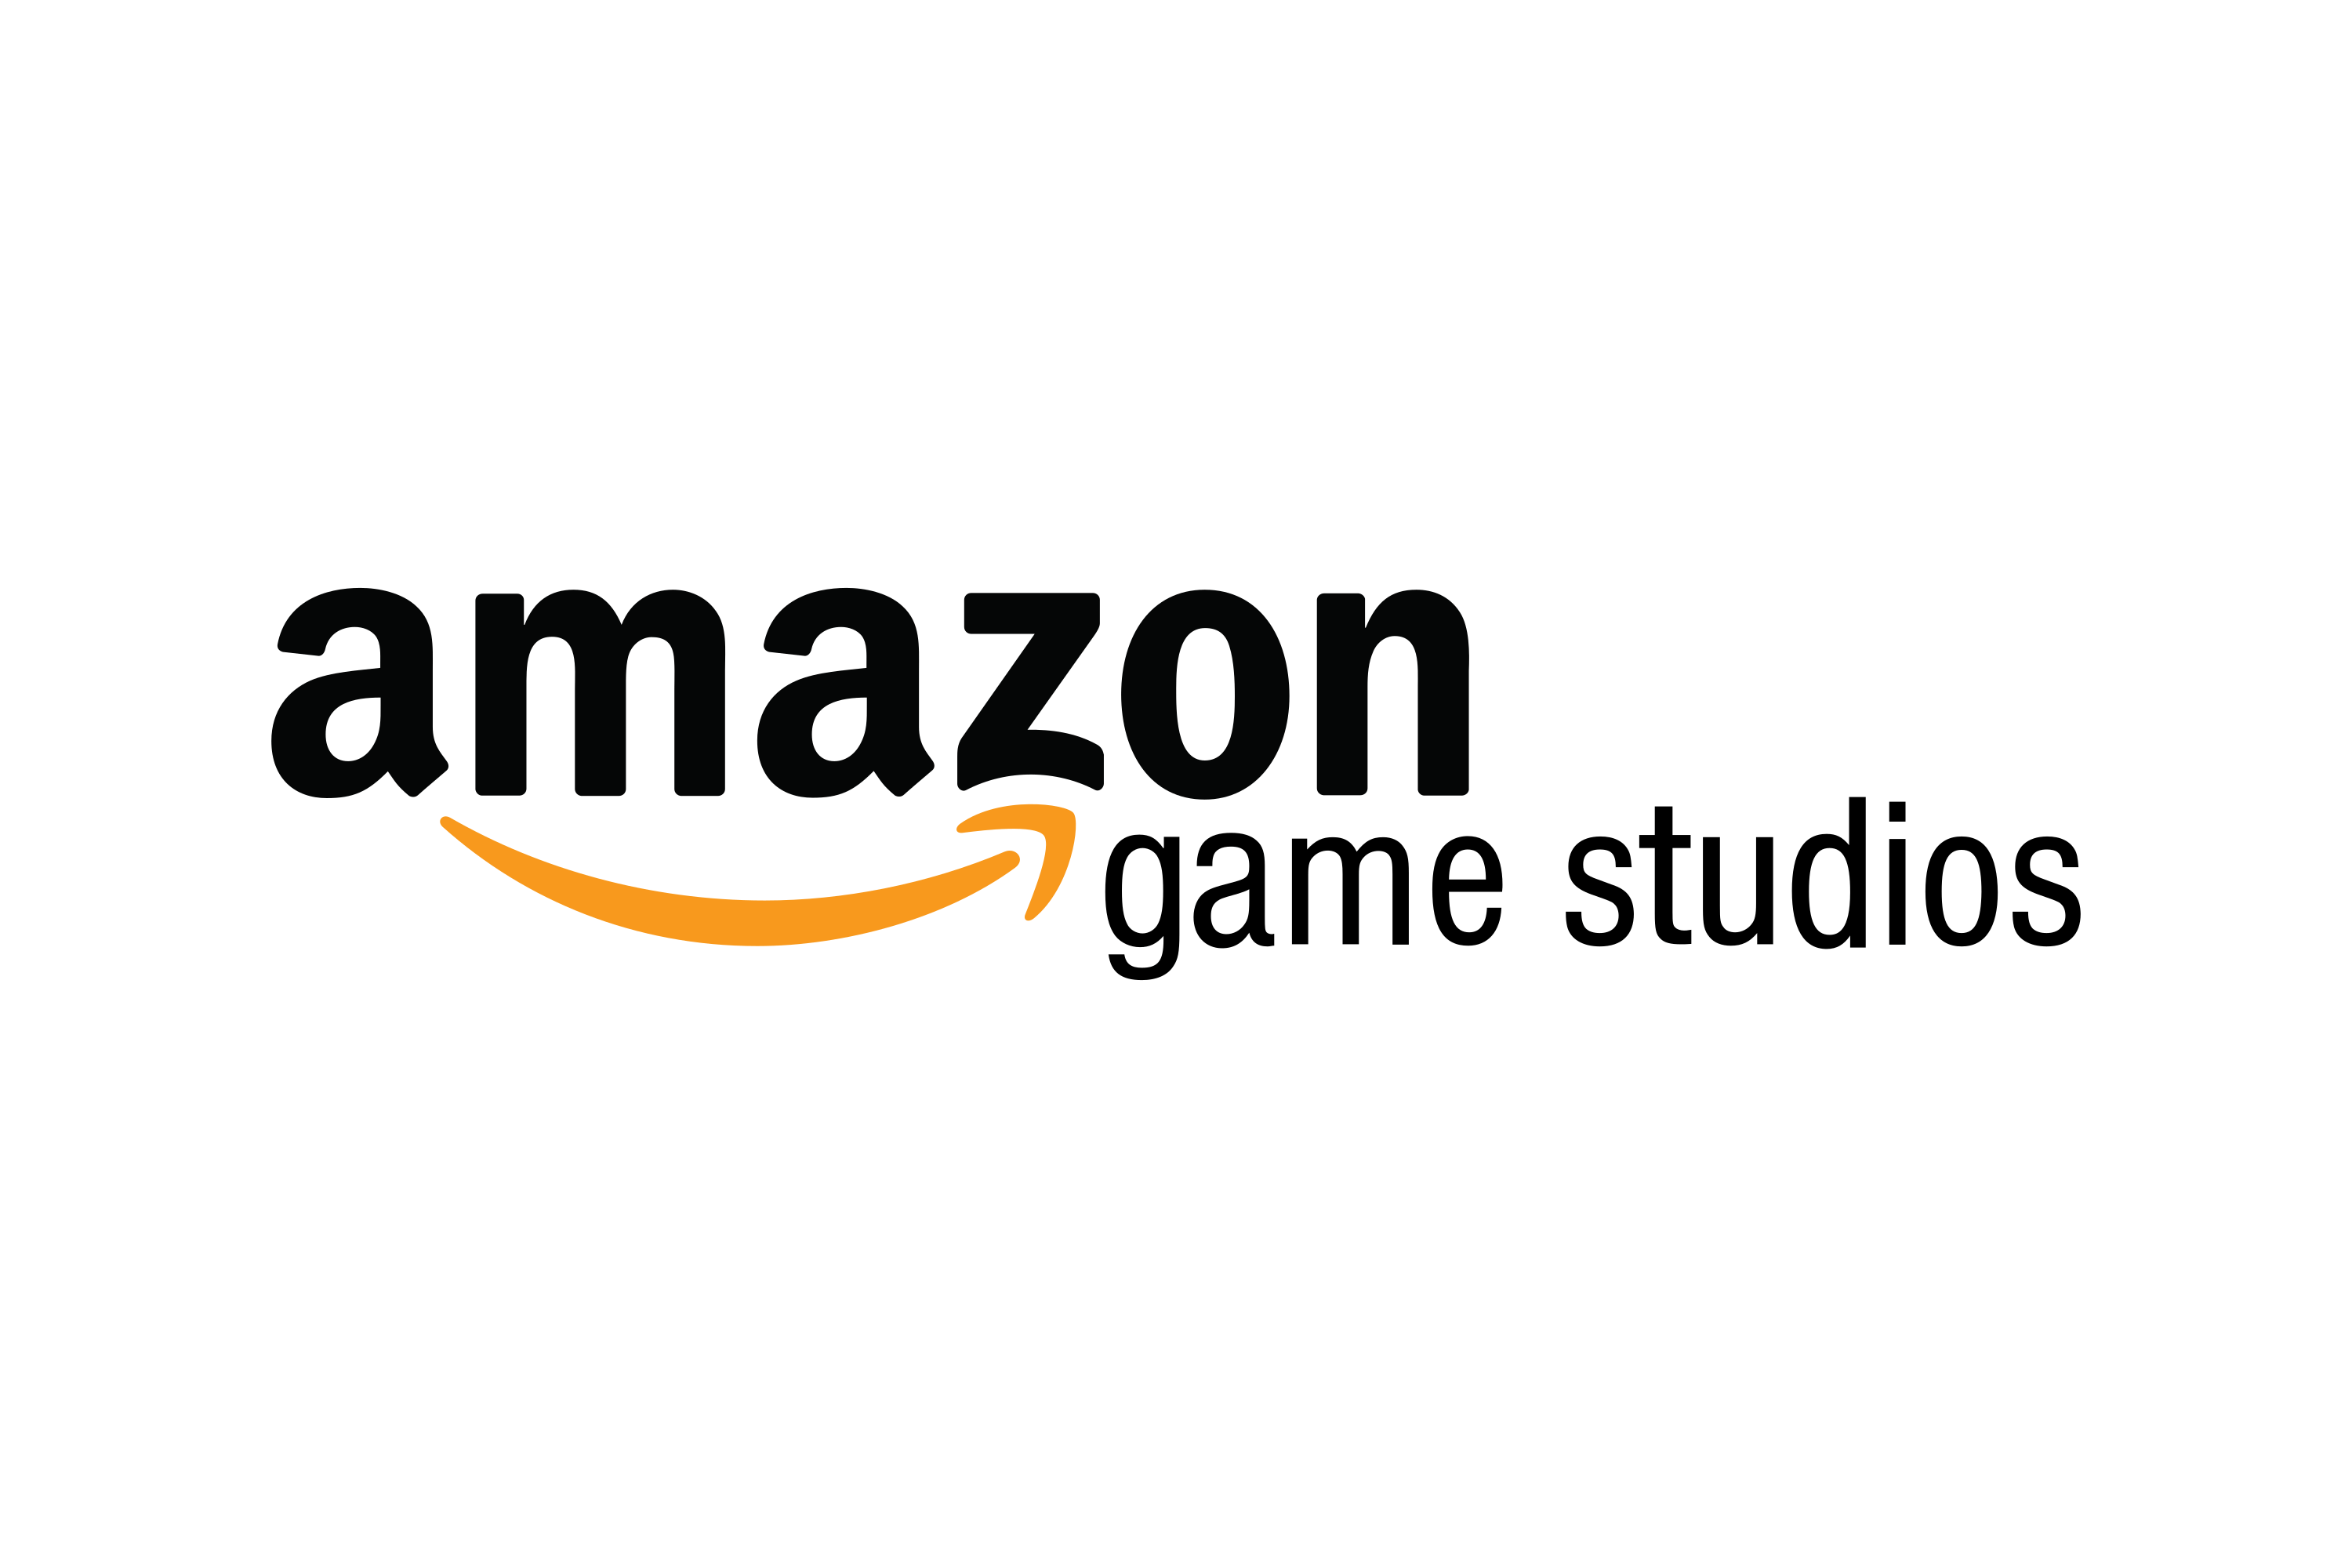 Amazon-games